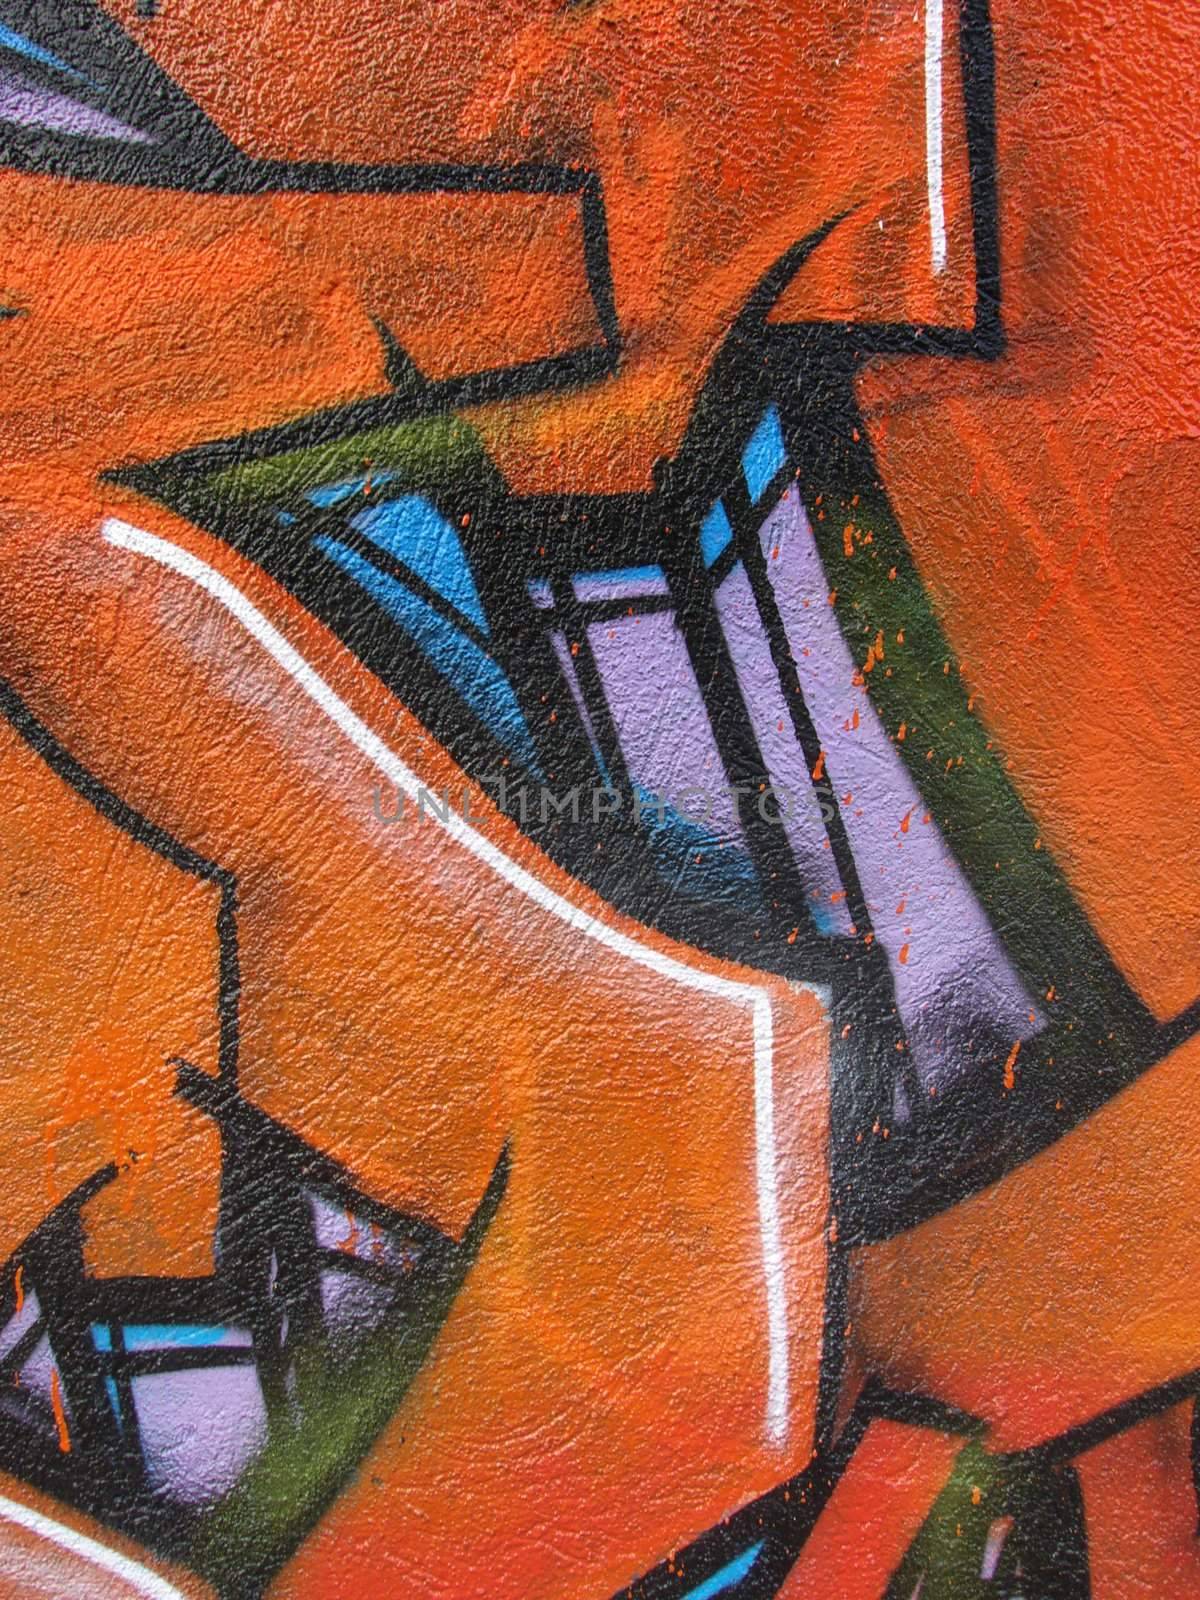 Graffiti Detail by jbouzou